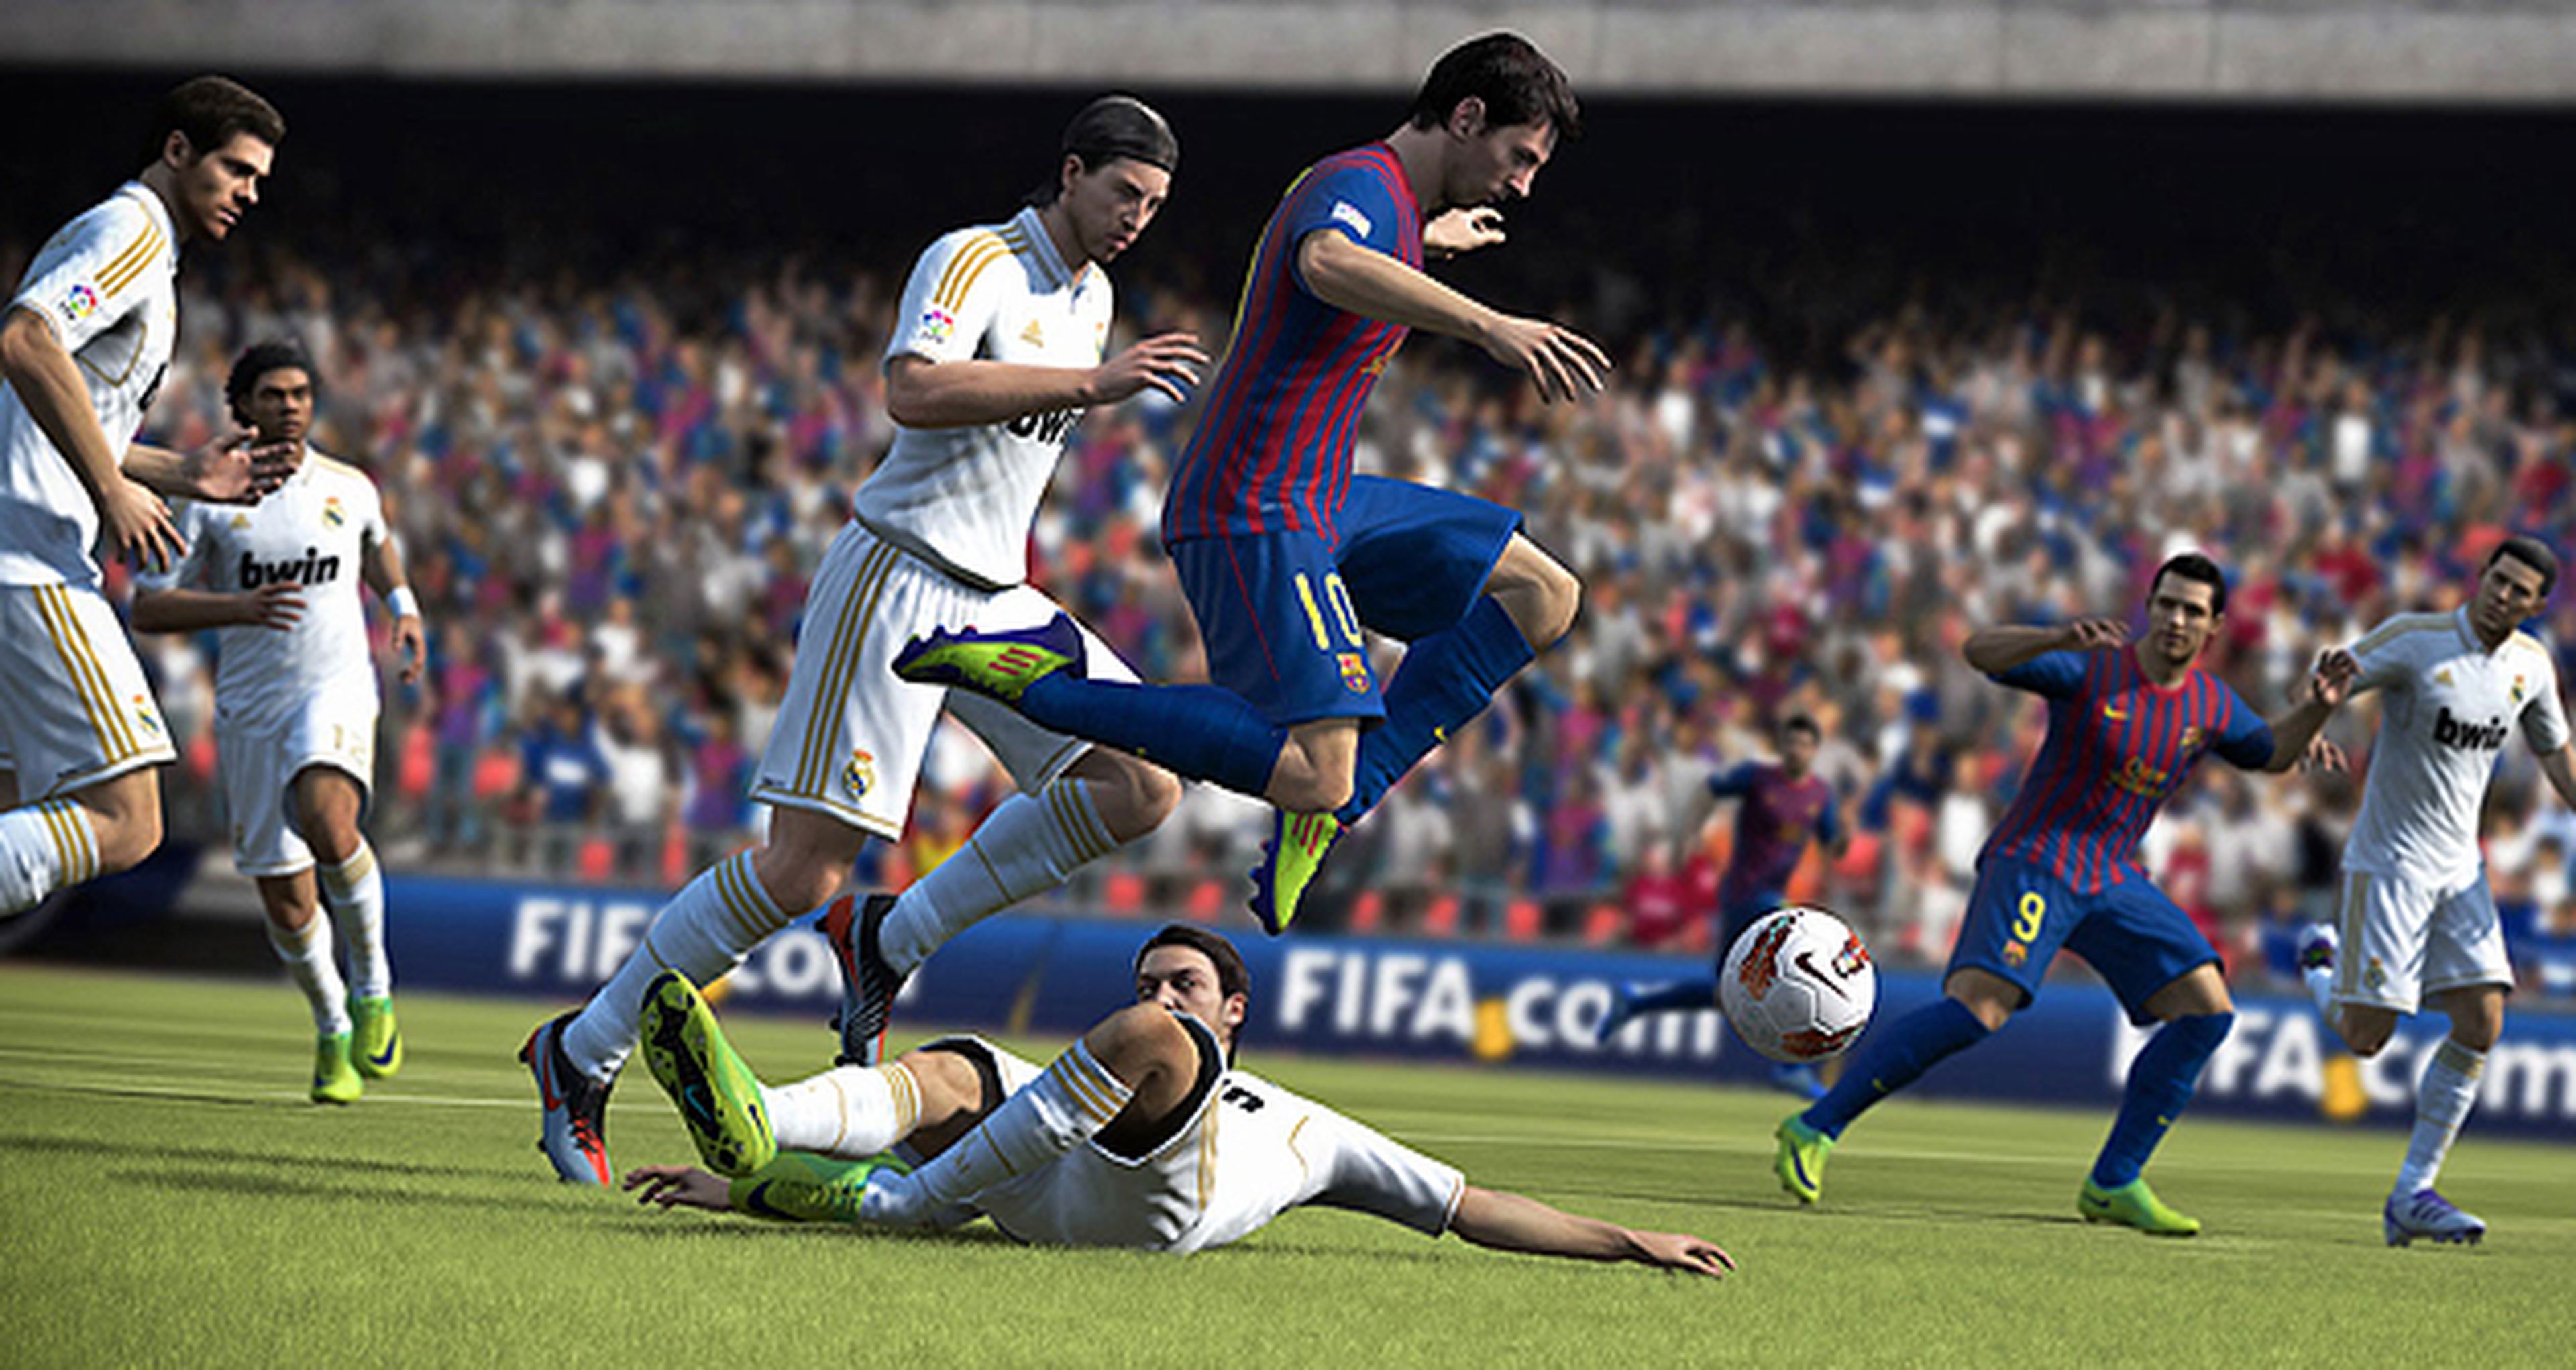 Rebajas en las ediciones especiales de FIFA 13